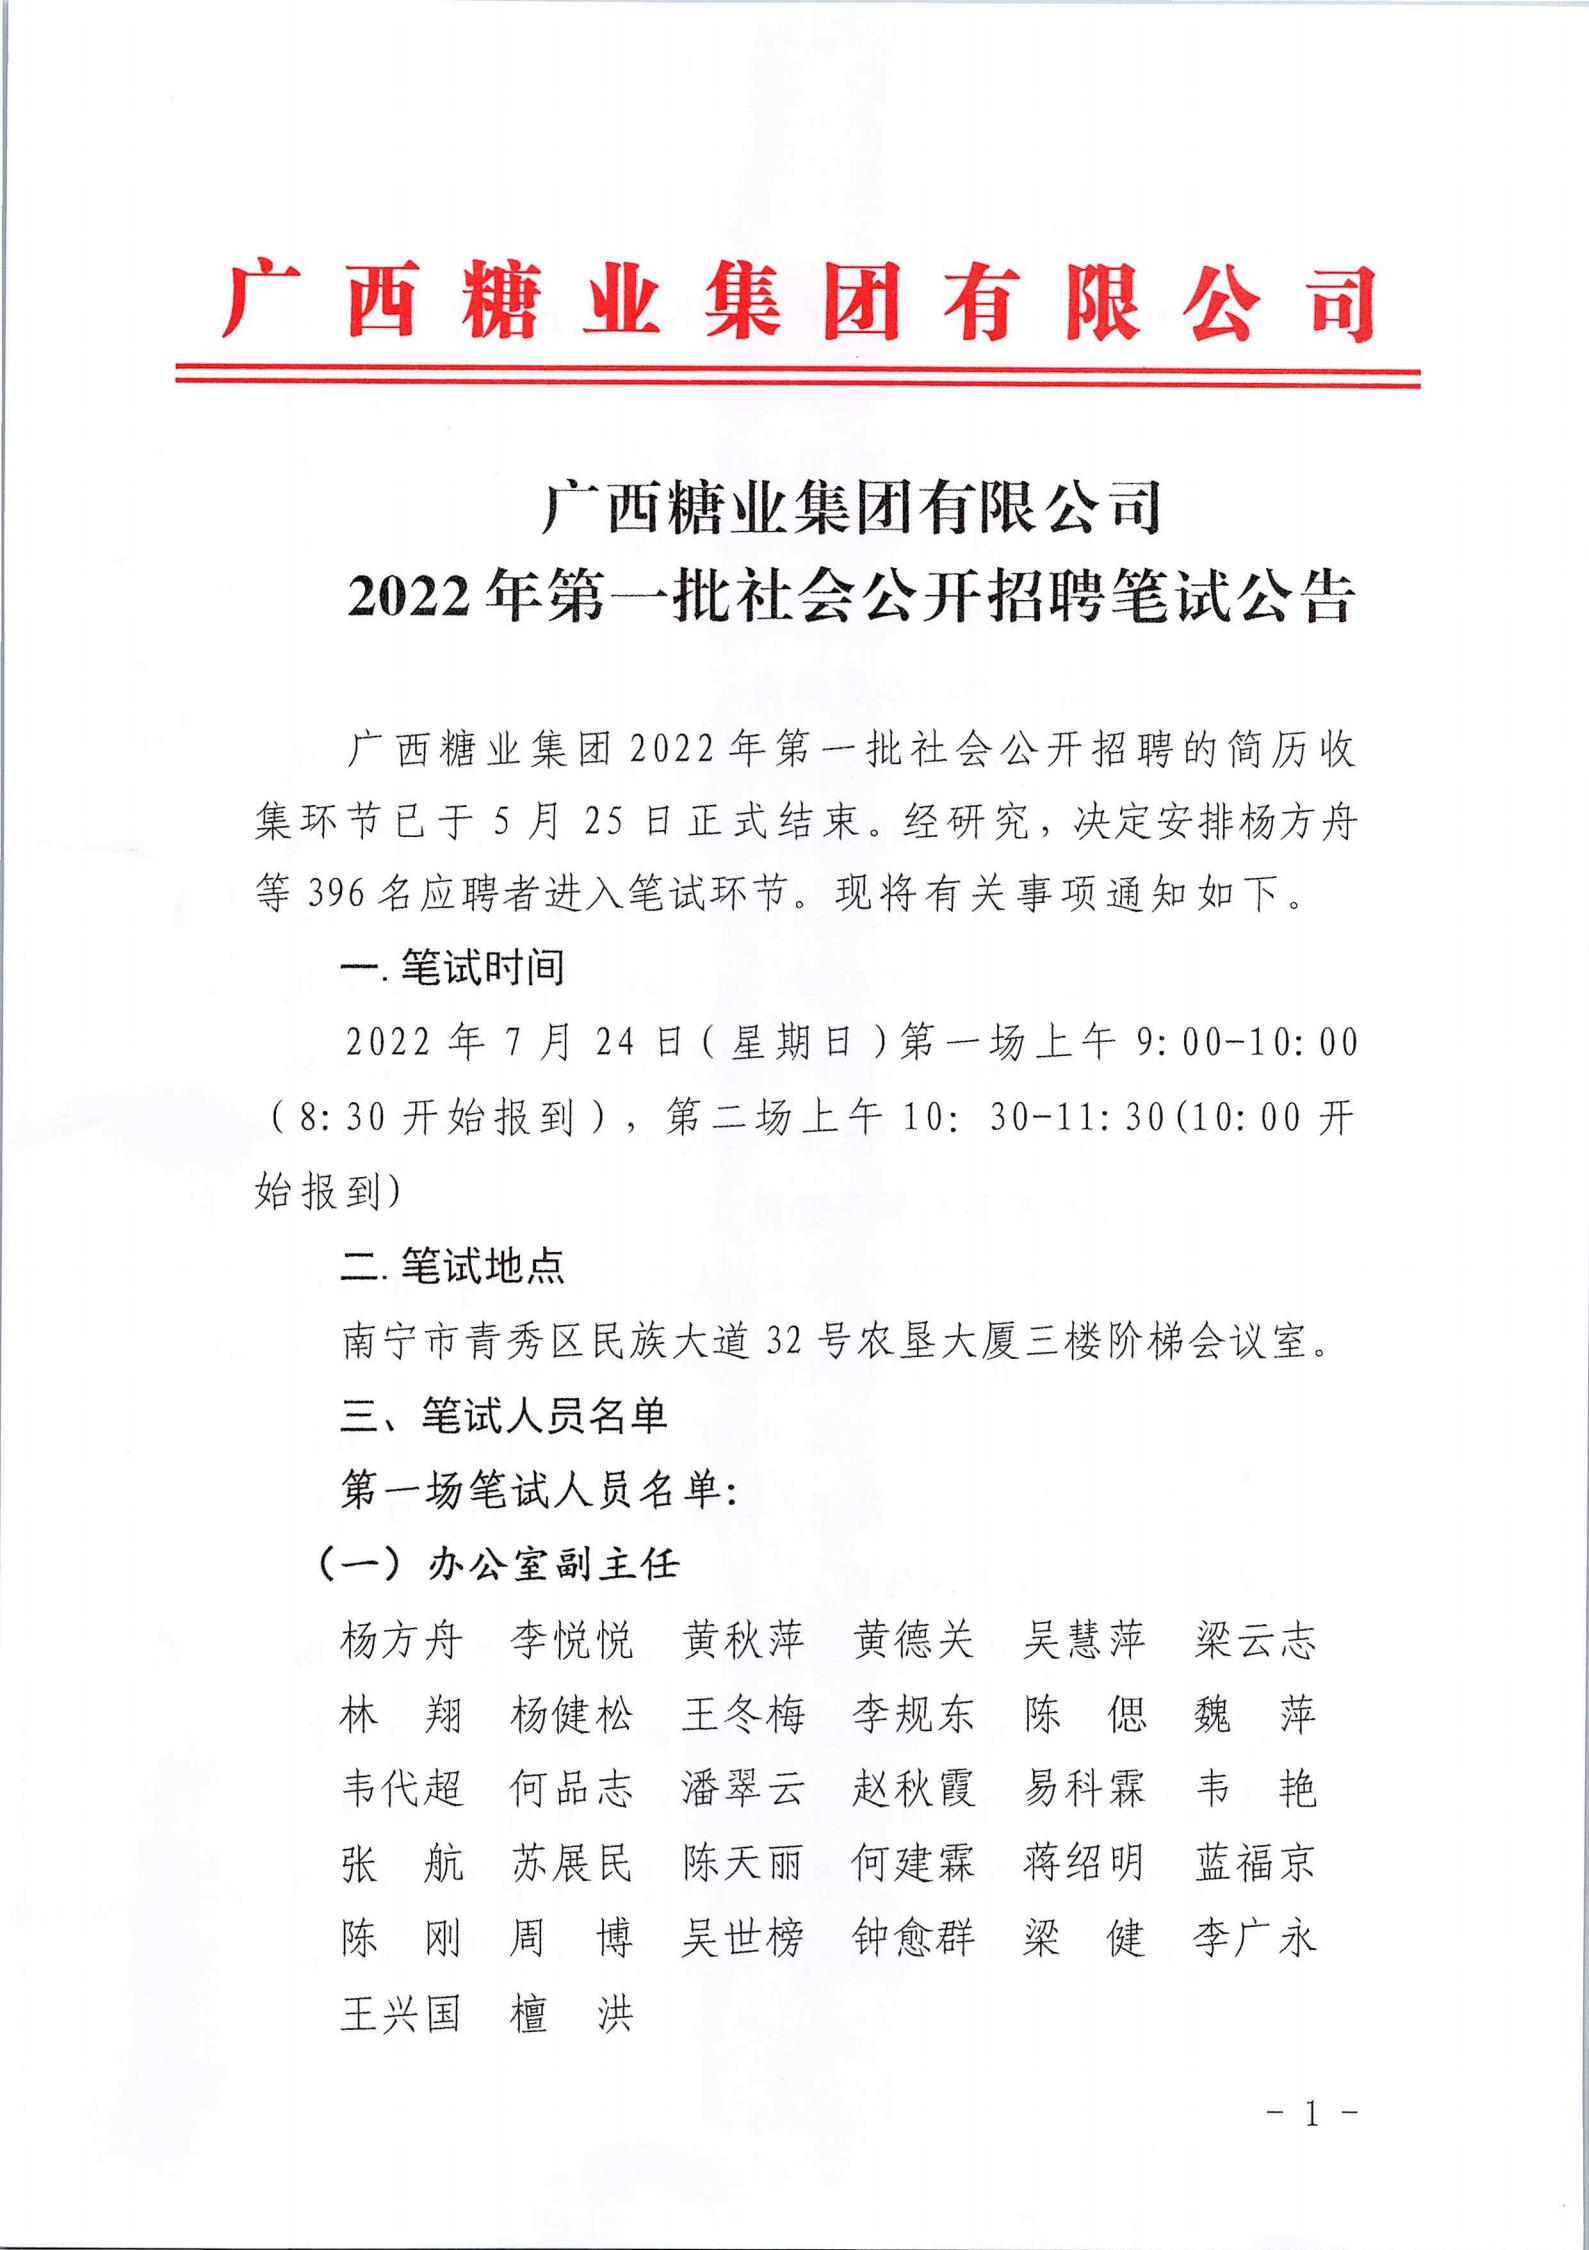 广西糖业集团有限公司2022年第一批社会公开招聘笔试公告_00.jpg